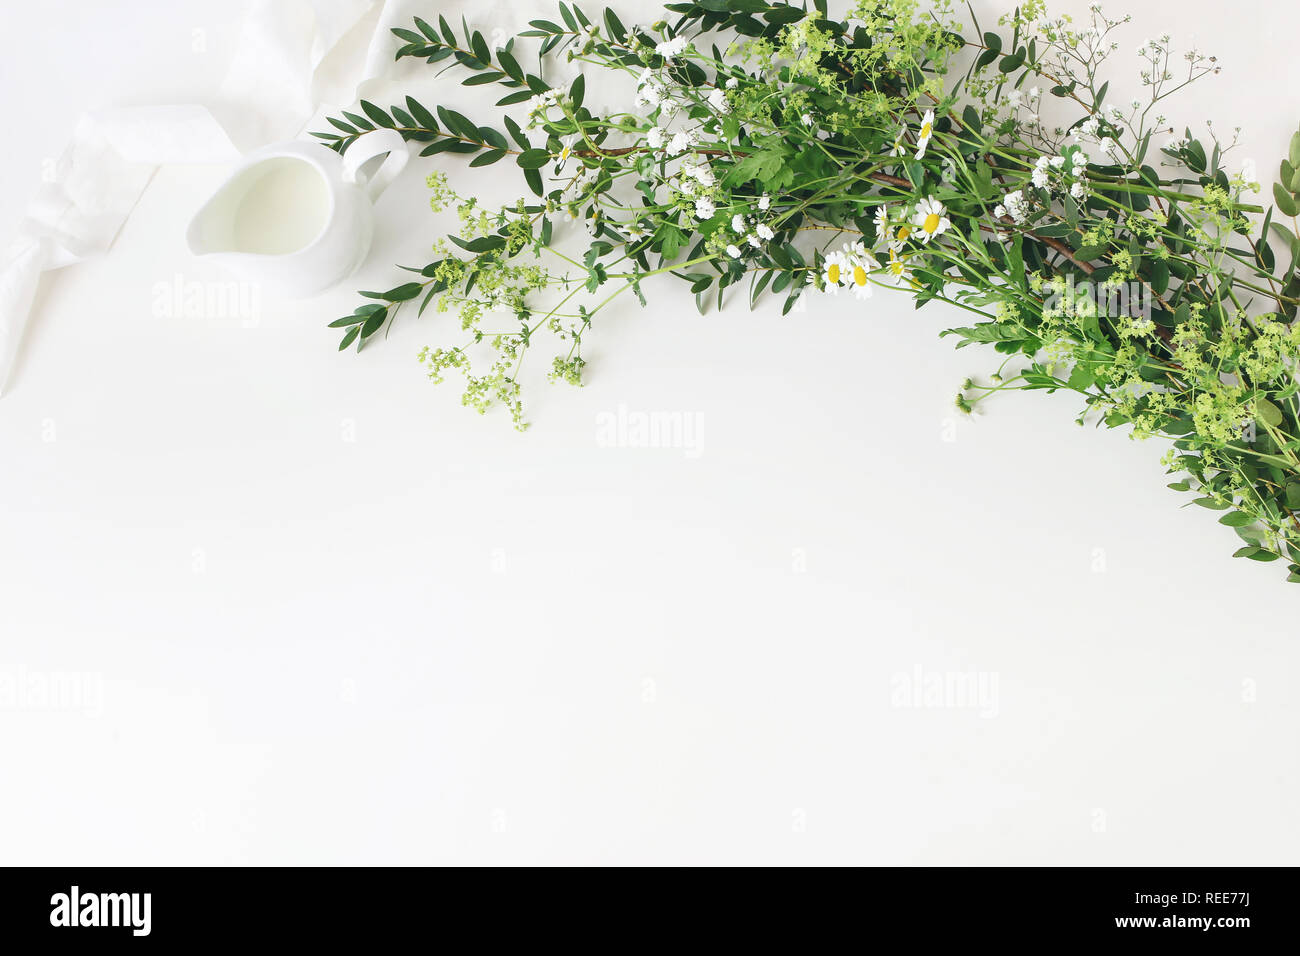 Festliche Hochzeit, Geburtstag tisch Szene mit Eukalyptus Parvifolia, Seidenband, wilde Wiese Blumen und Milch Krug auf weißem Hintergrund. Rustikale Stockfoto